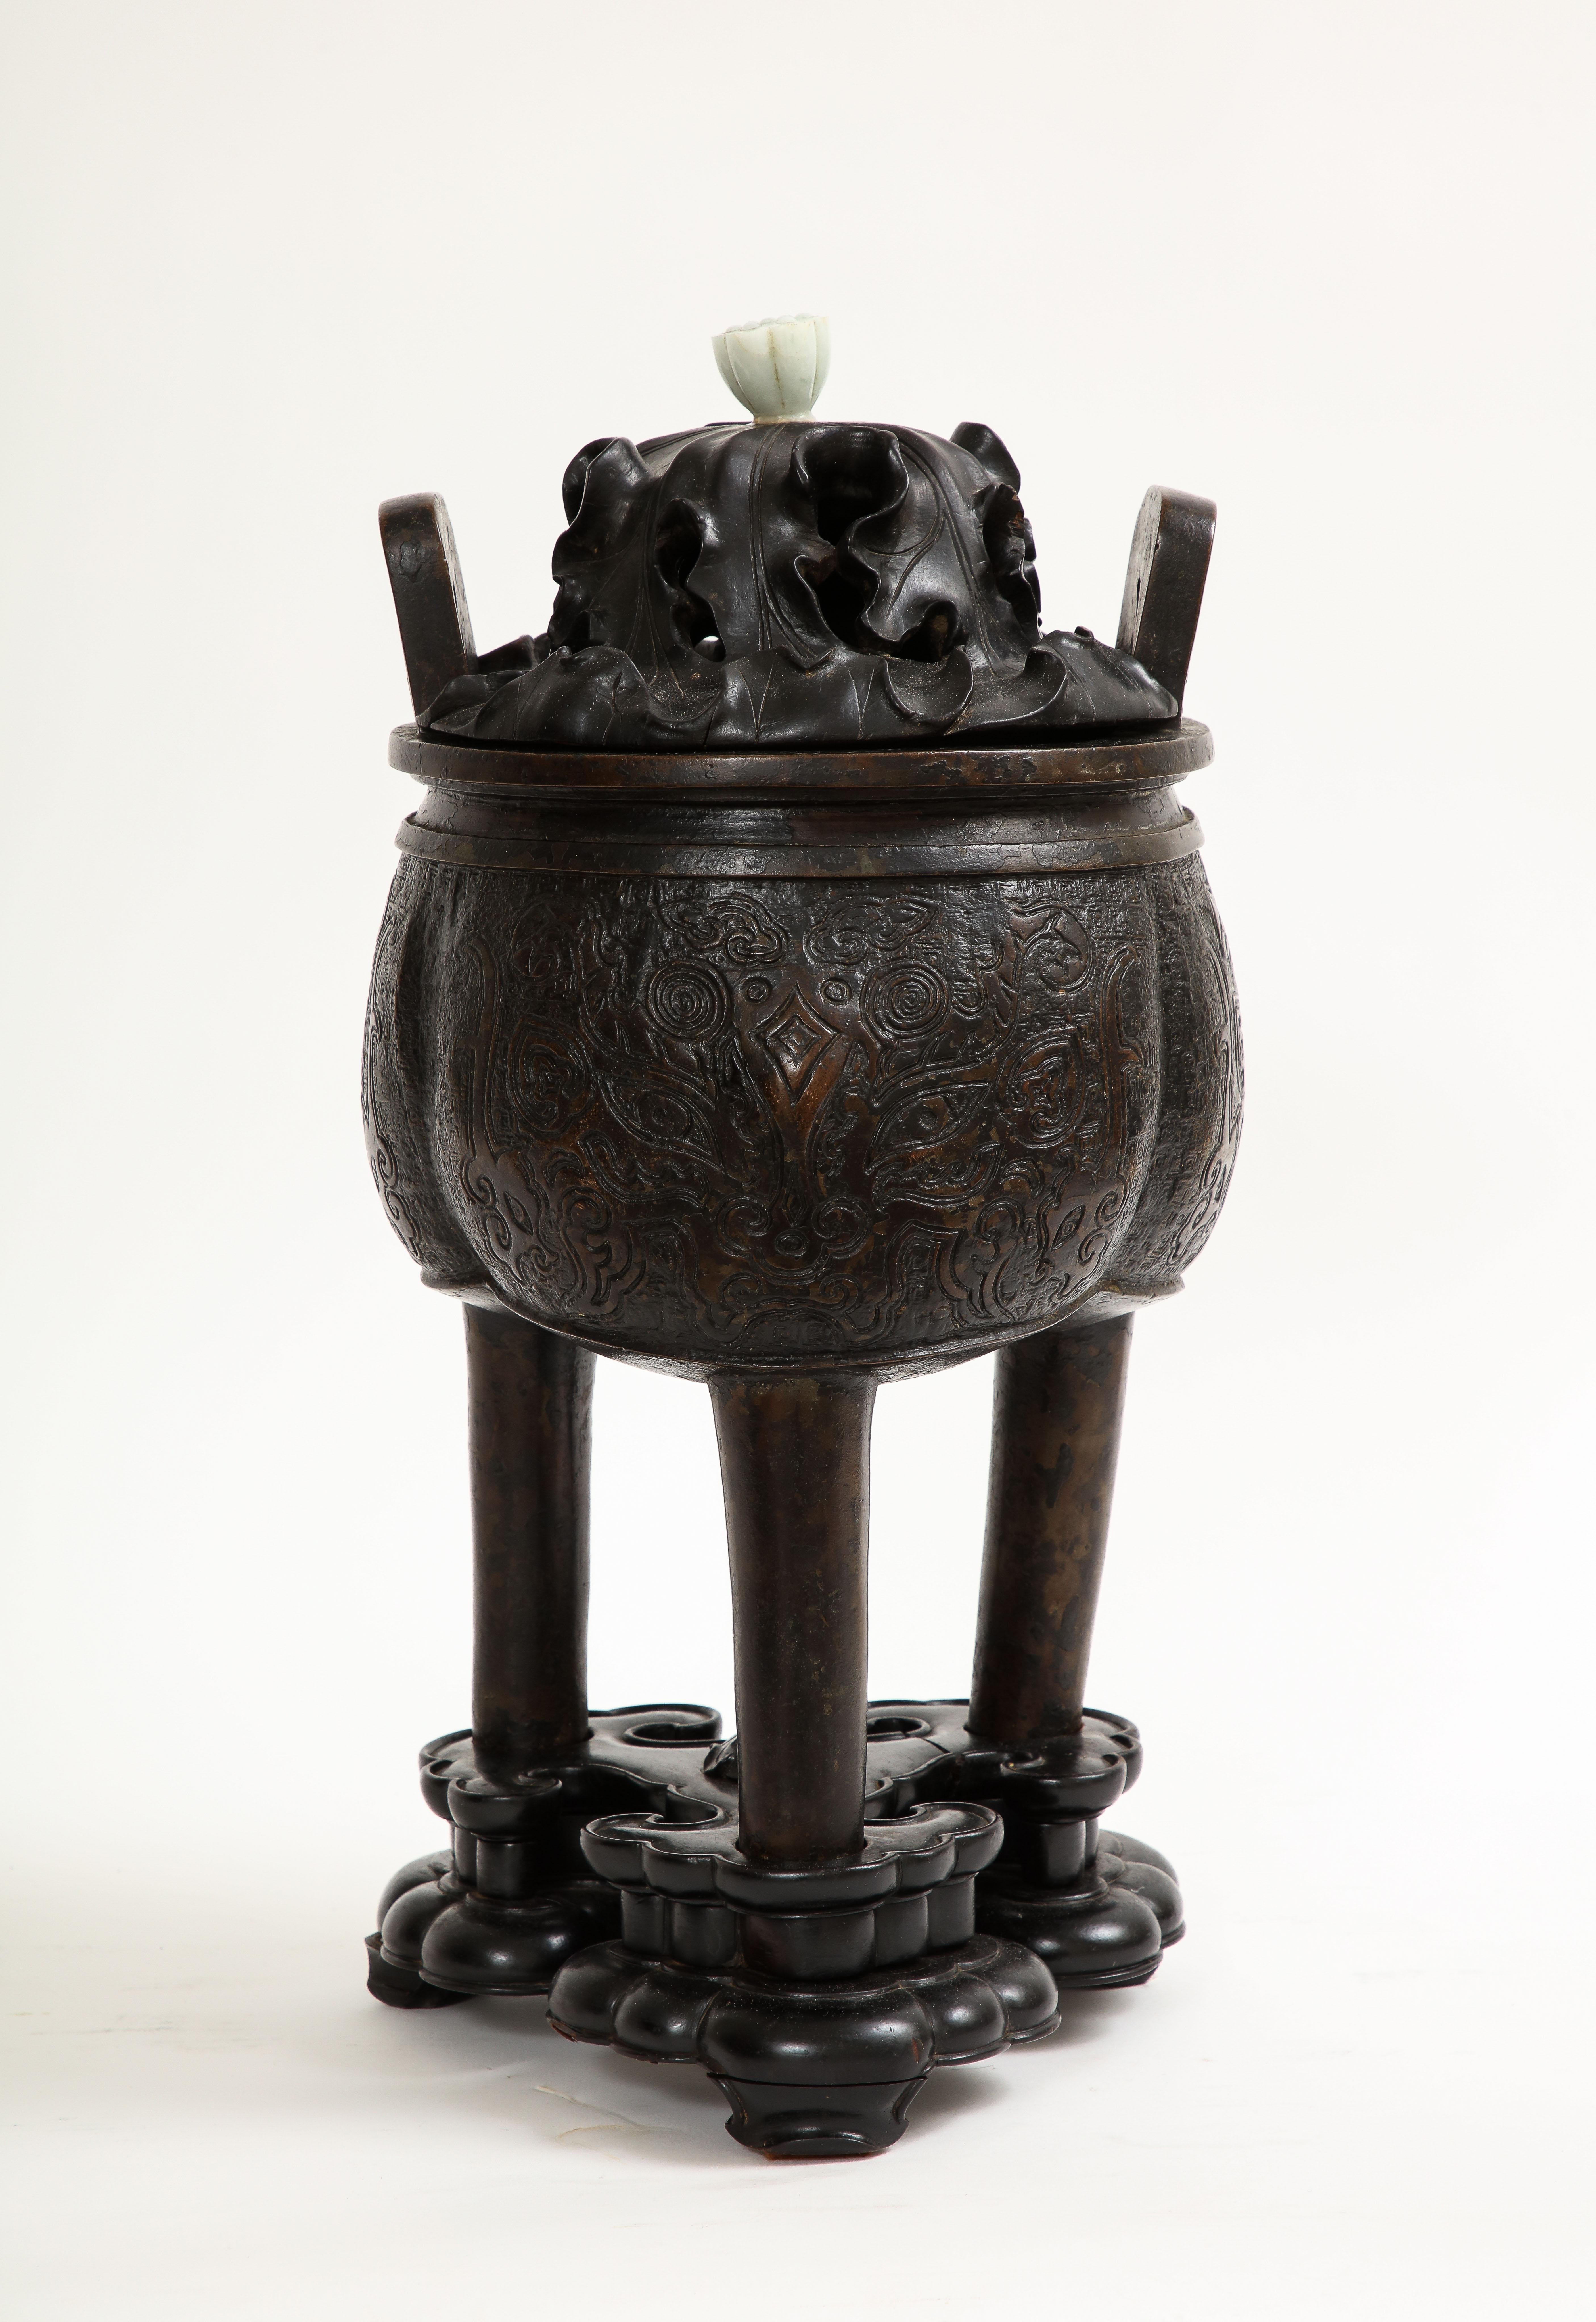 Fantastique et rare encensoir et couvercle en bronze patiné chinois du XVIIe siècle, avec fleuron en jade et base en bois.  Le corps de ce censeur est minutieusement décoré de motifs archaïques en relief ciselé à la main.  Le couvercle en bois est